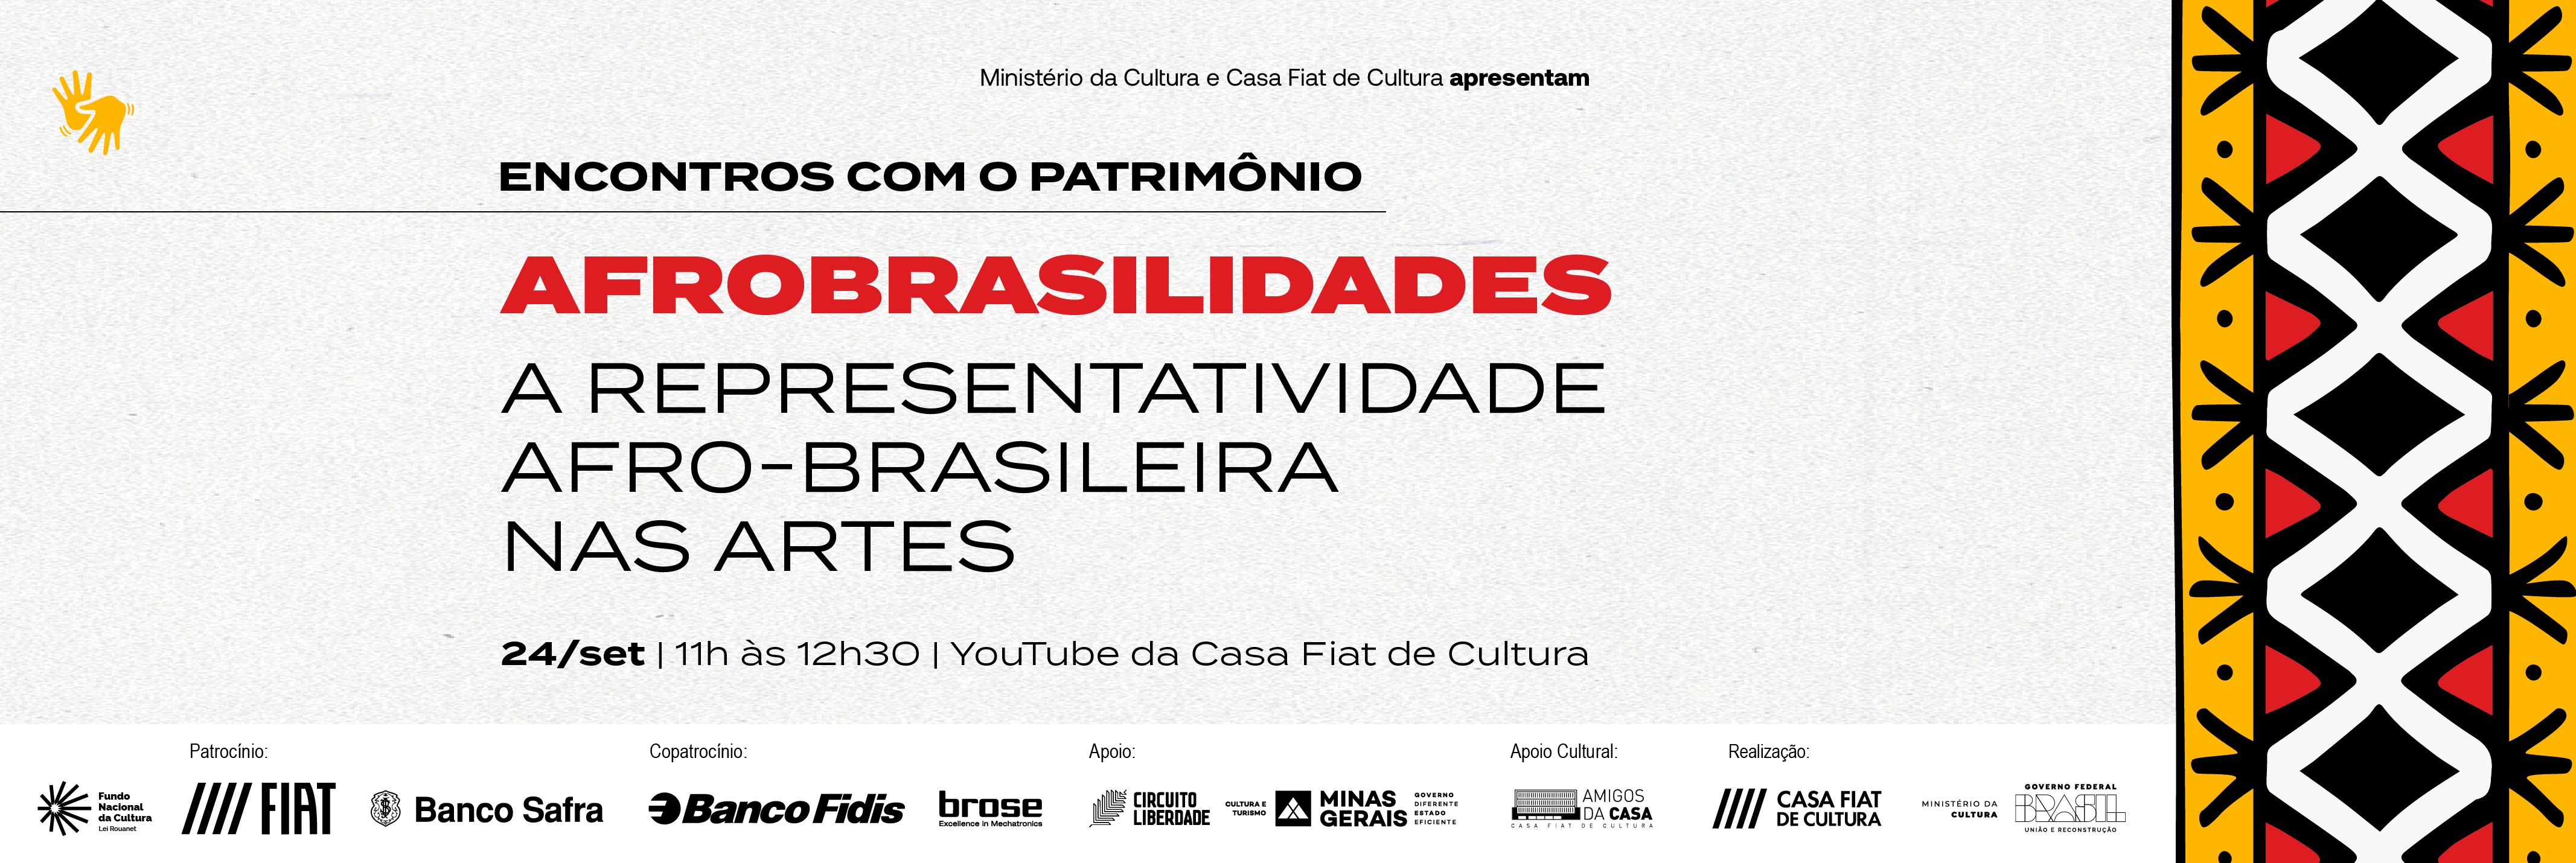 Encontros com o Patrimônio | Afrobrasilidades: a representatividade afro-brasileira nas artes